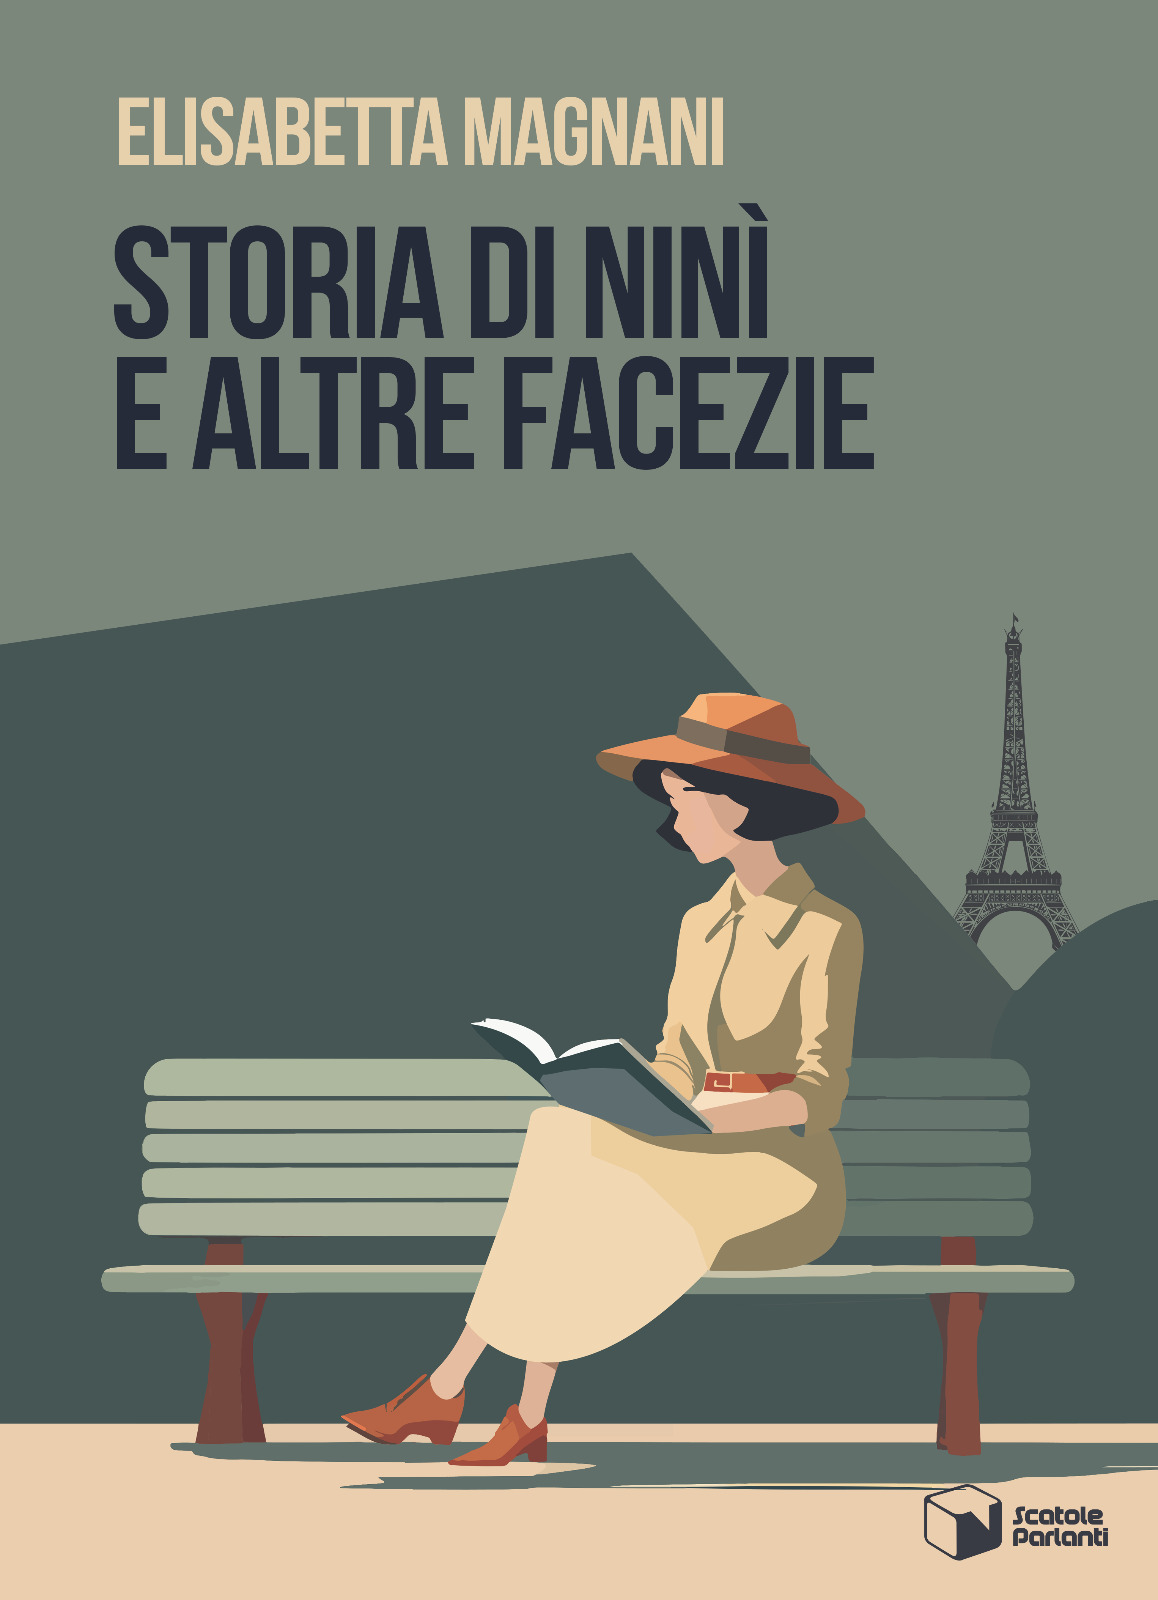 couverture du livre :Elisabetta Magnani, Storia di Ninì e altre facezie, 2024